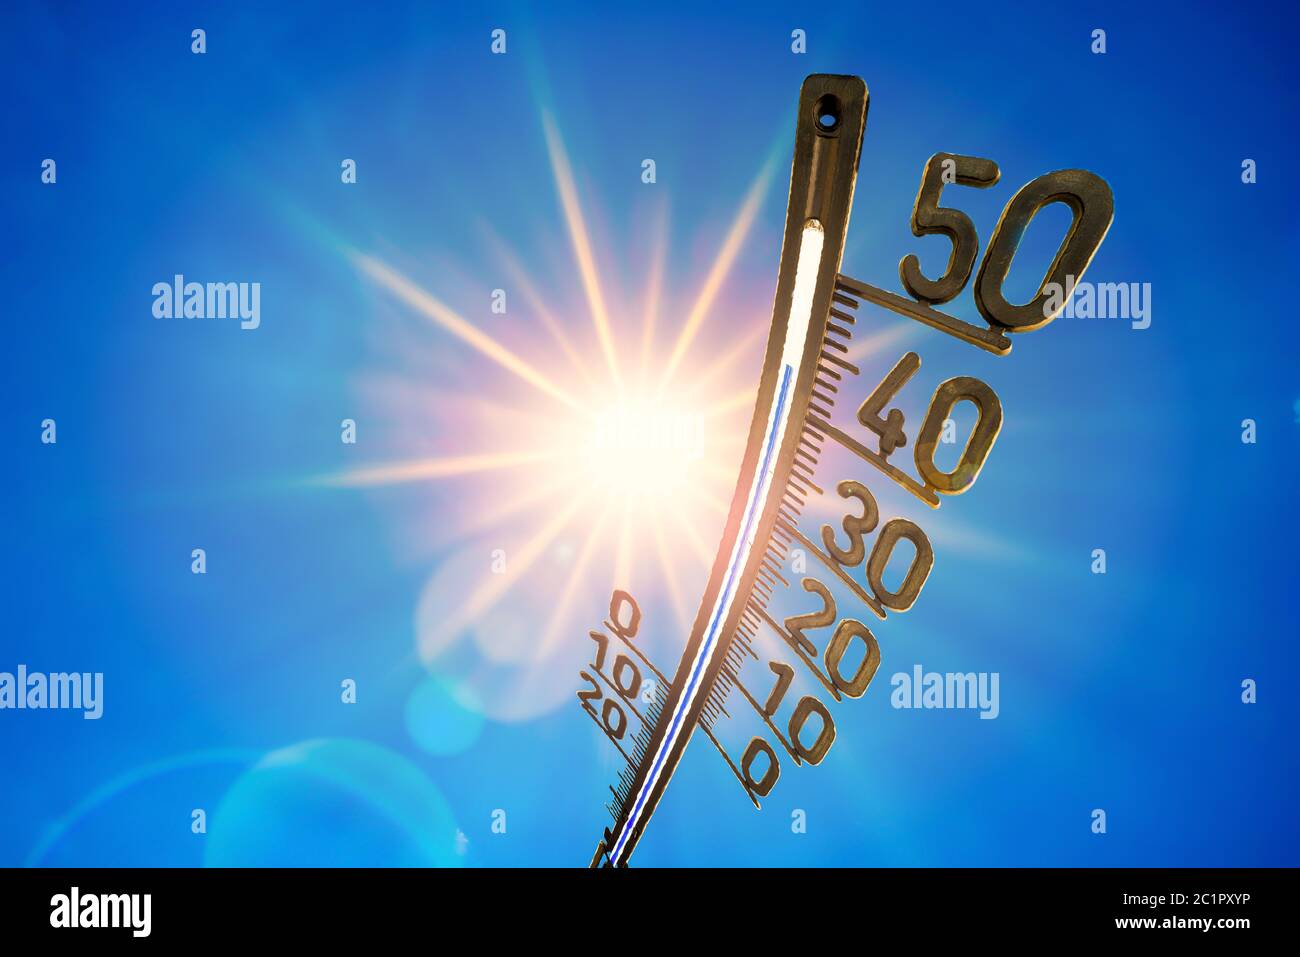 Verano caliente o fondo de ola de calor, sol brillante sobre cielo azul con termómetro Foto de stock